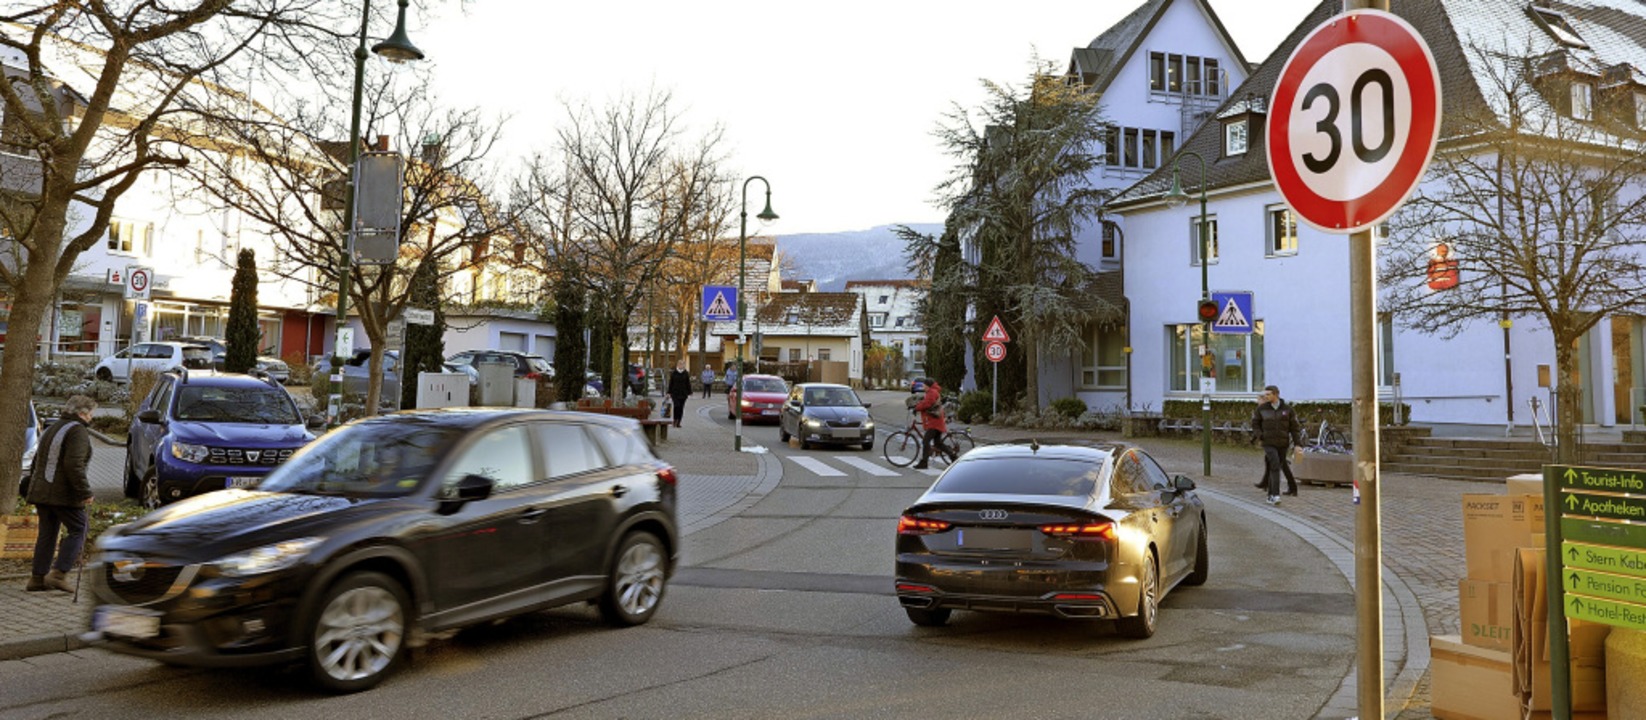 Auf der Schwarzwaldstraße in Kirchzarten gilt Tempo 30.   | Foto: Anton Schuler